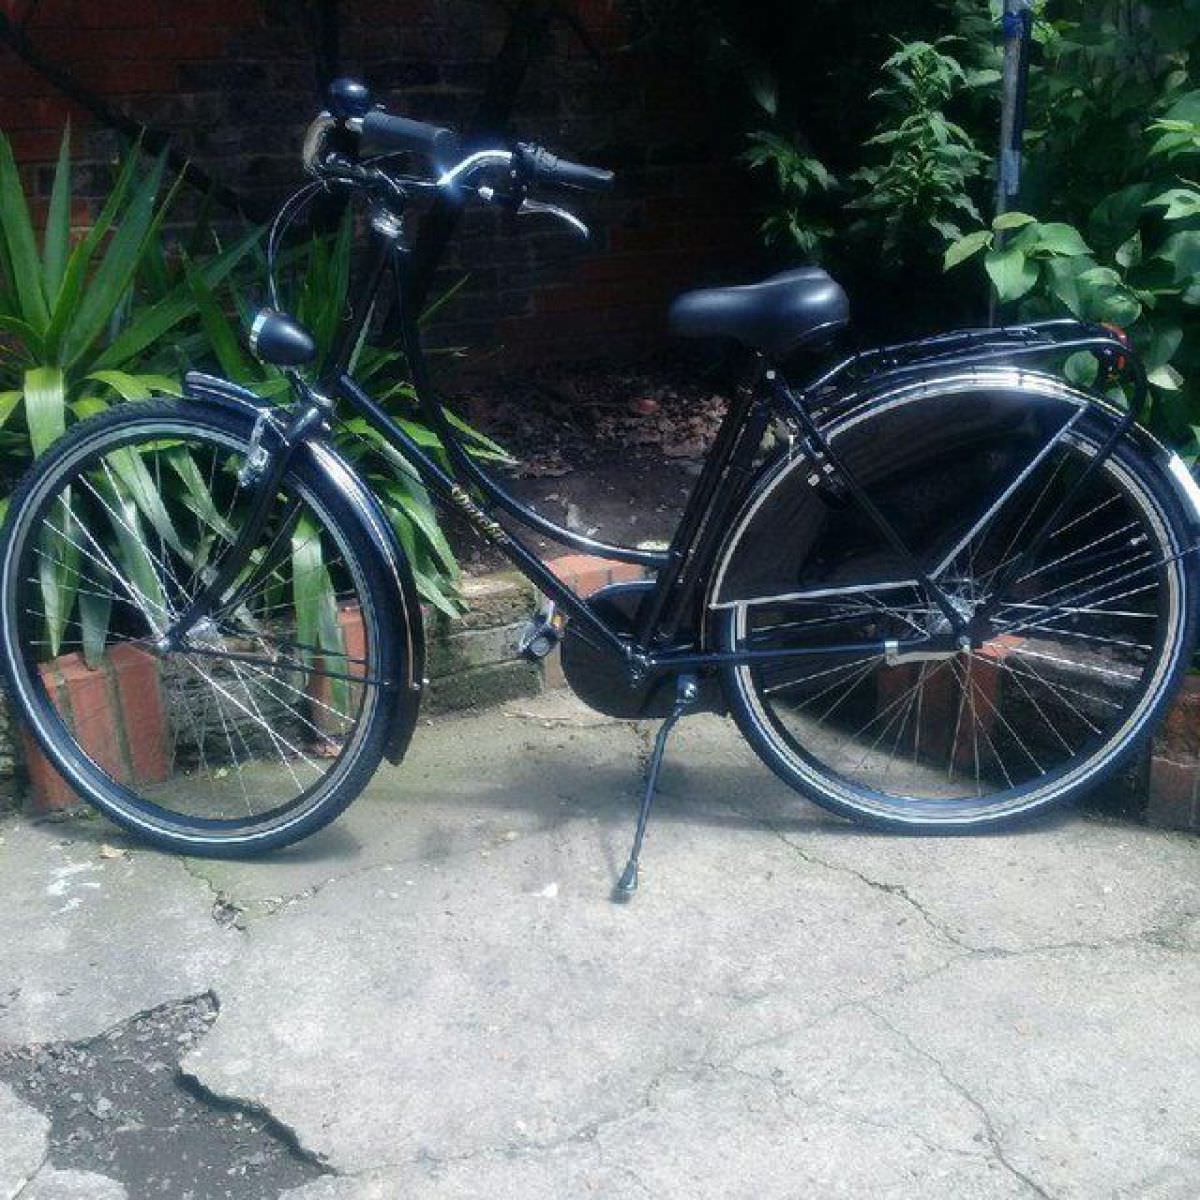 Lovely Dutchie 'Chic' bike